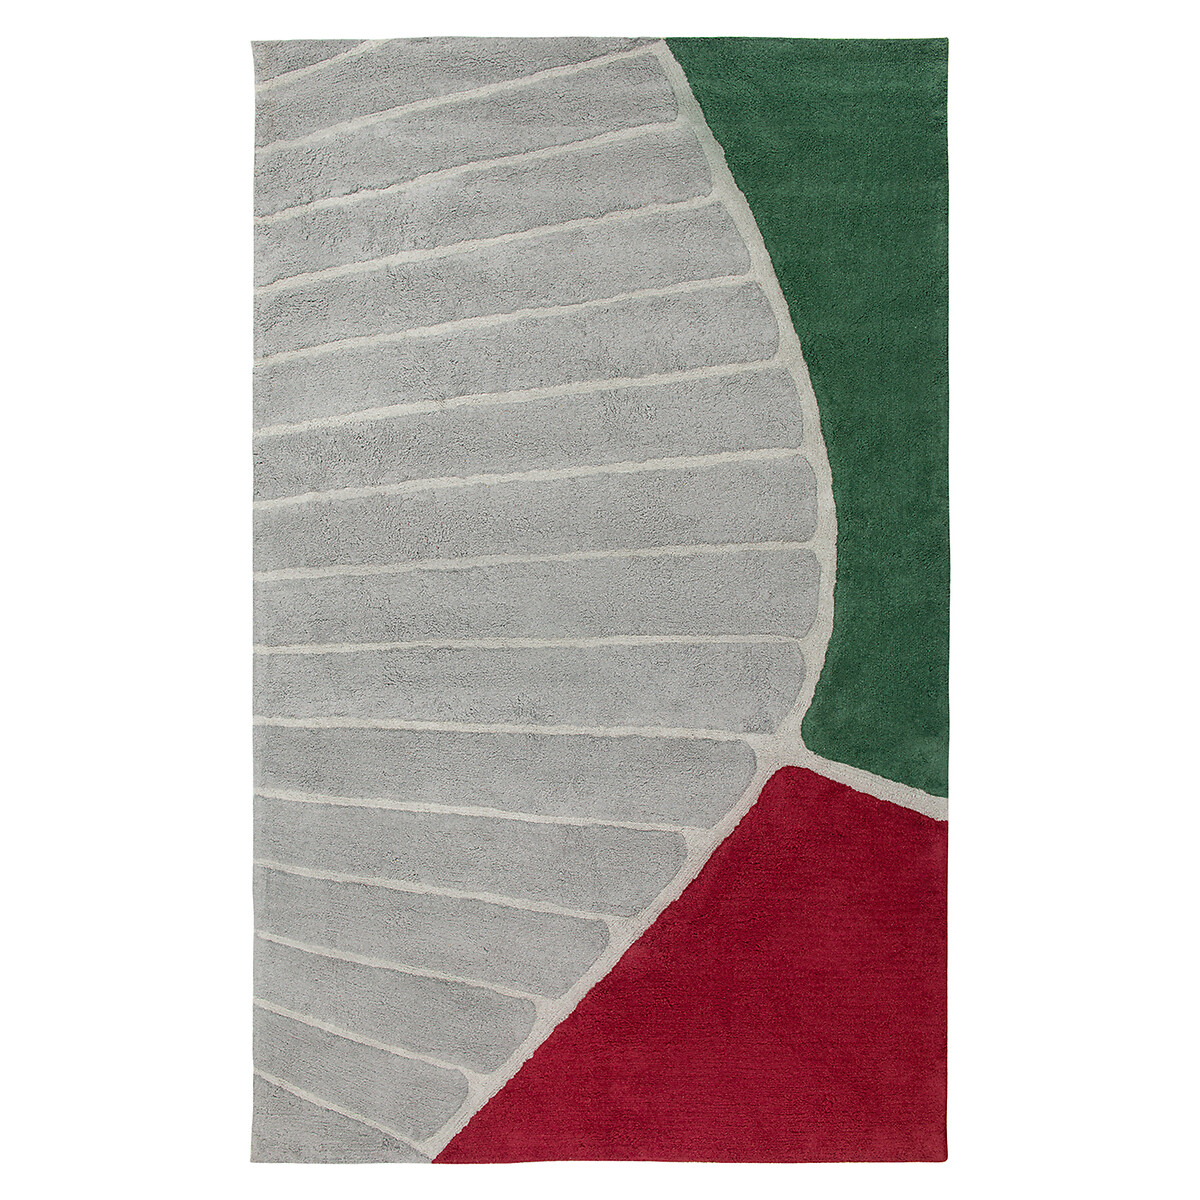 Ковер Из хлопка с рисунком Tea plantation 120 x 180 см разноцветный LaRedoute, размер 120 x 180 см - фото 2